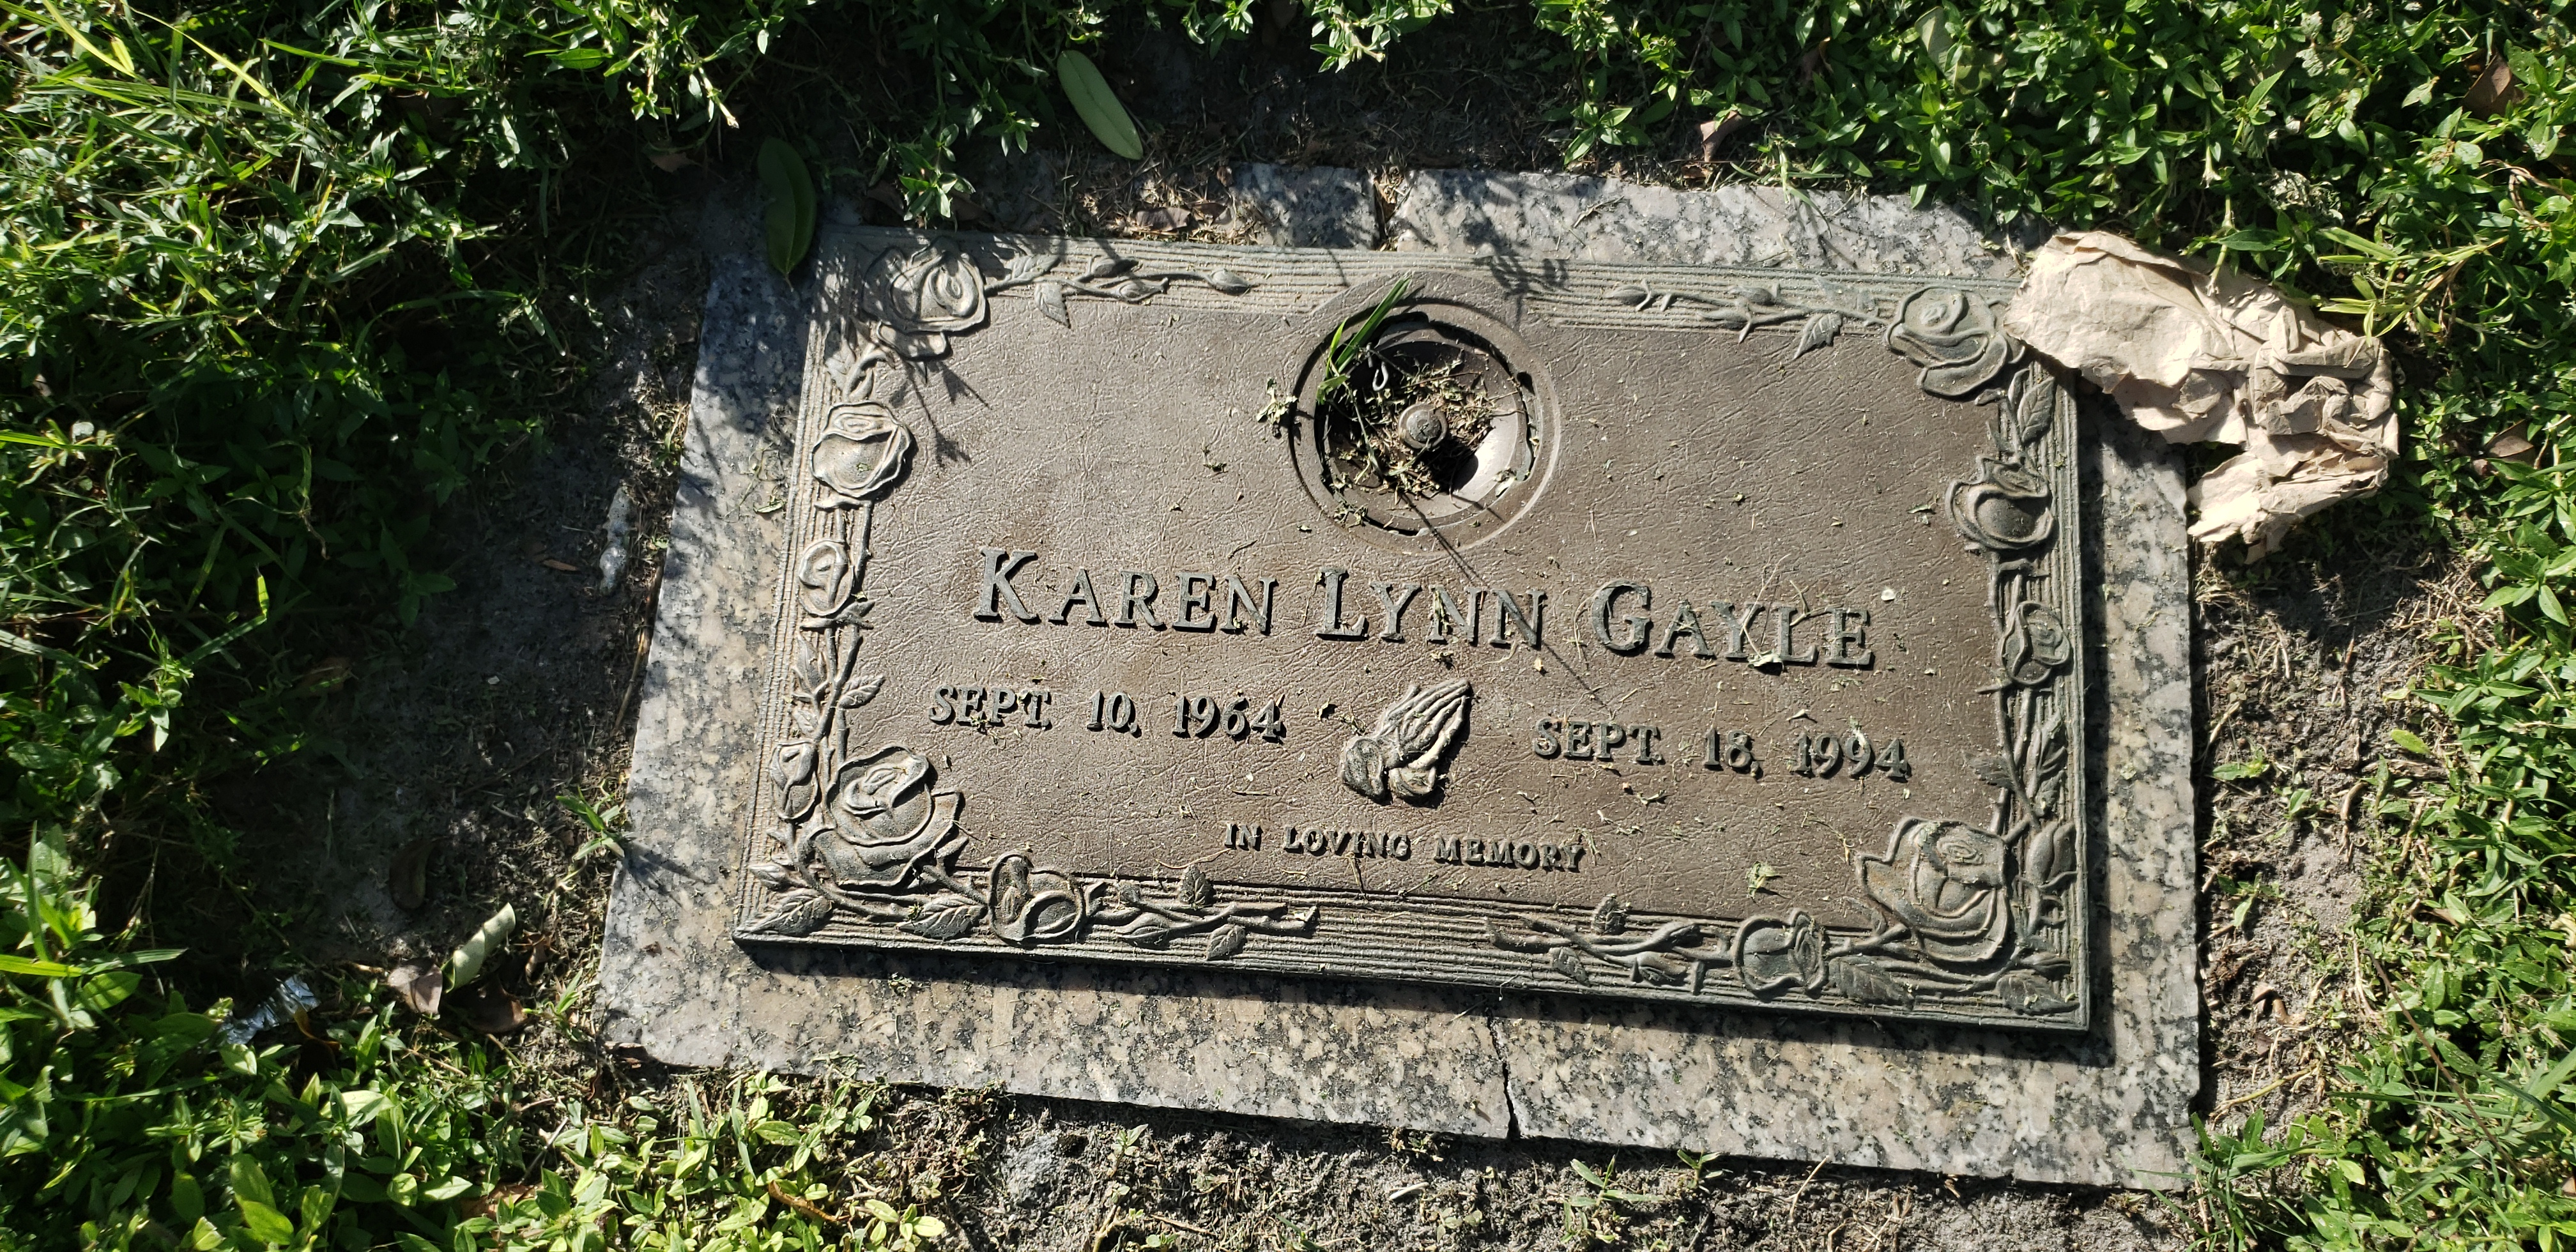 Karen Lynn Gayle